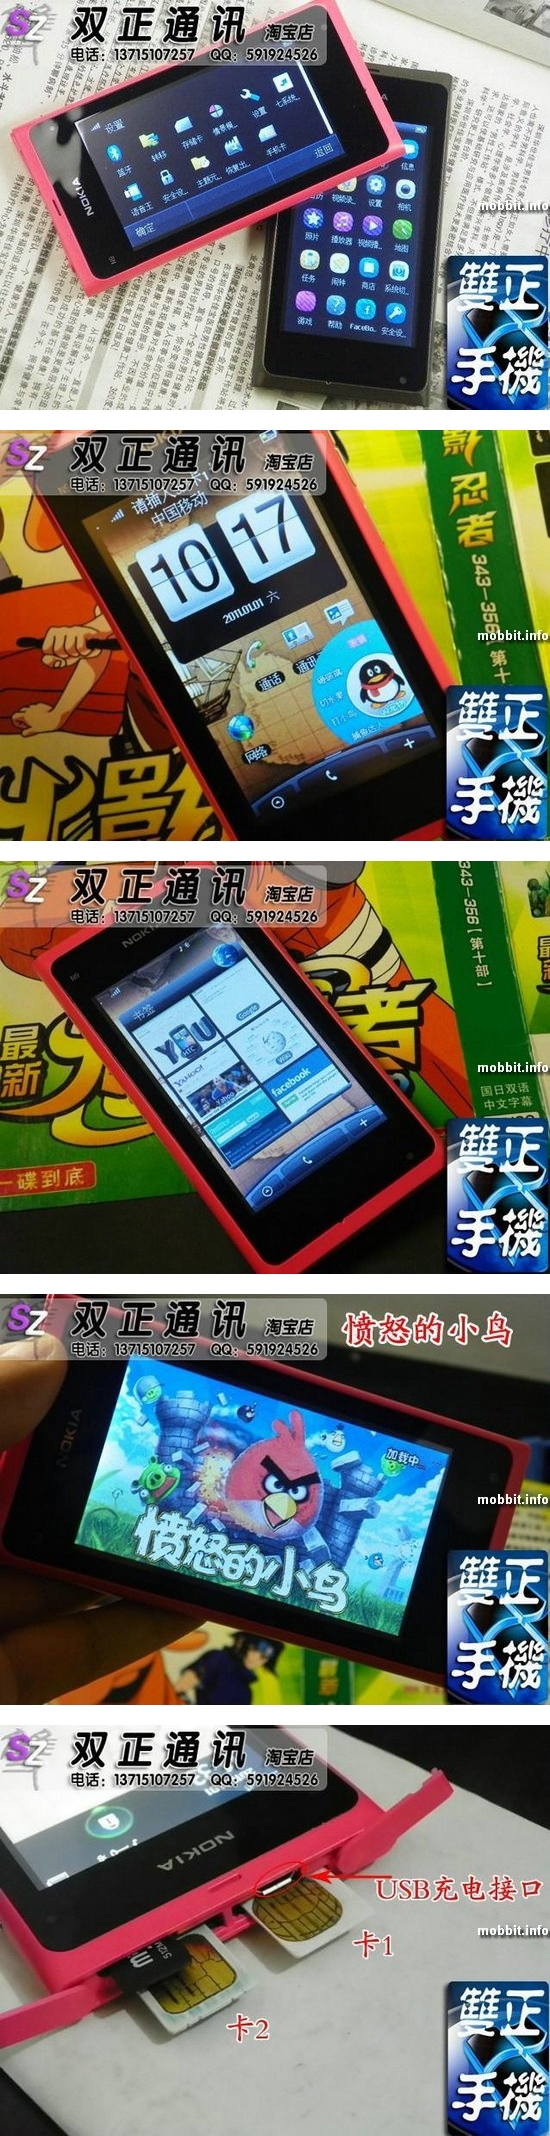 Очередной китайский клон Nokia N9